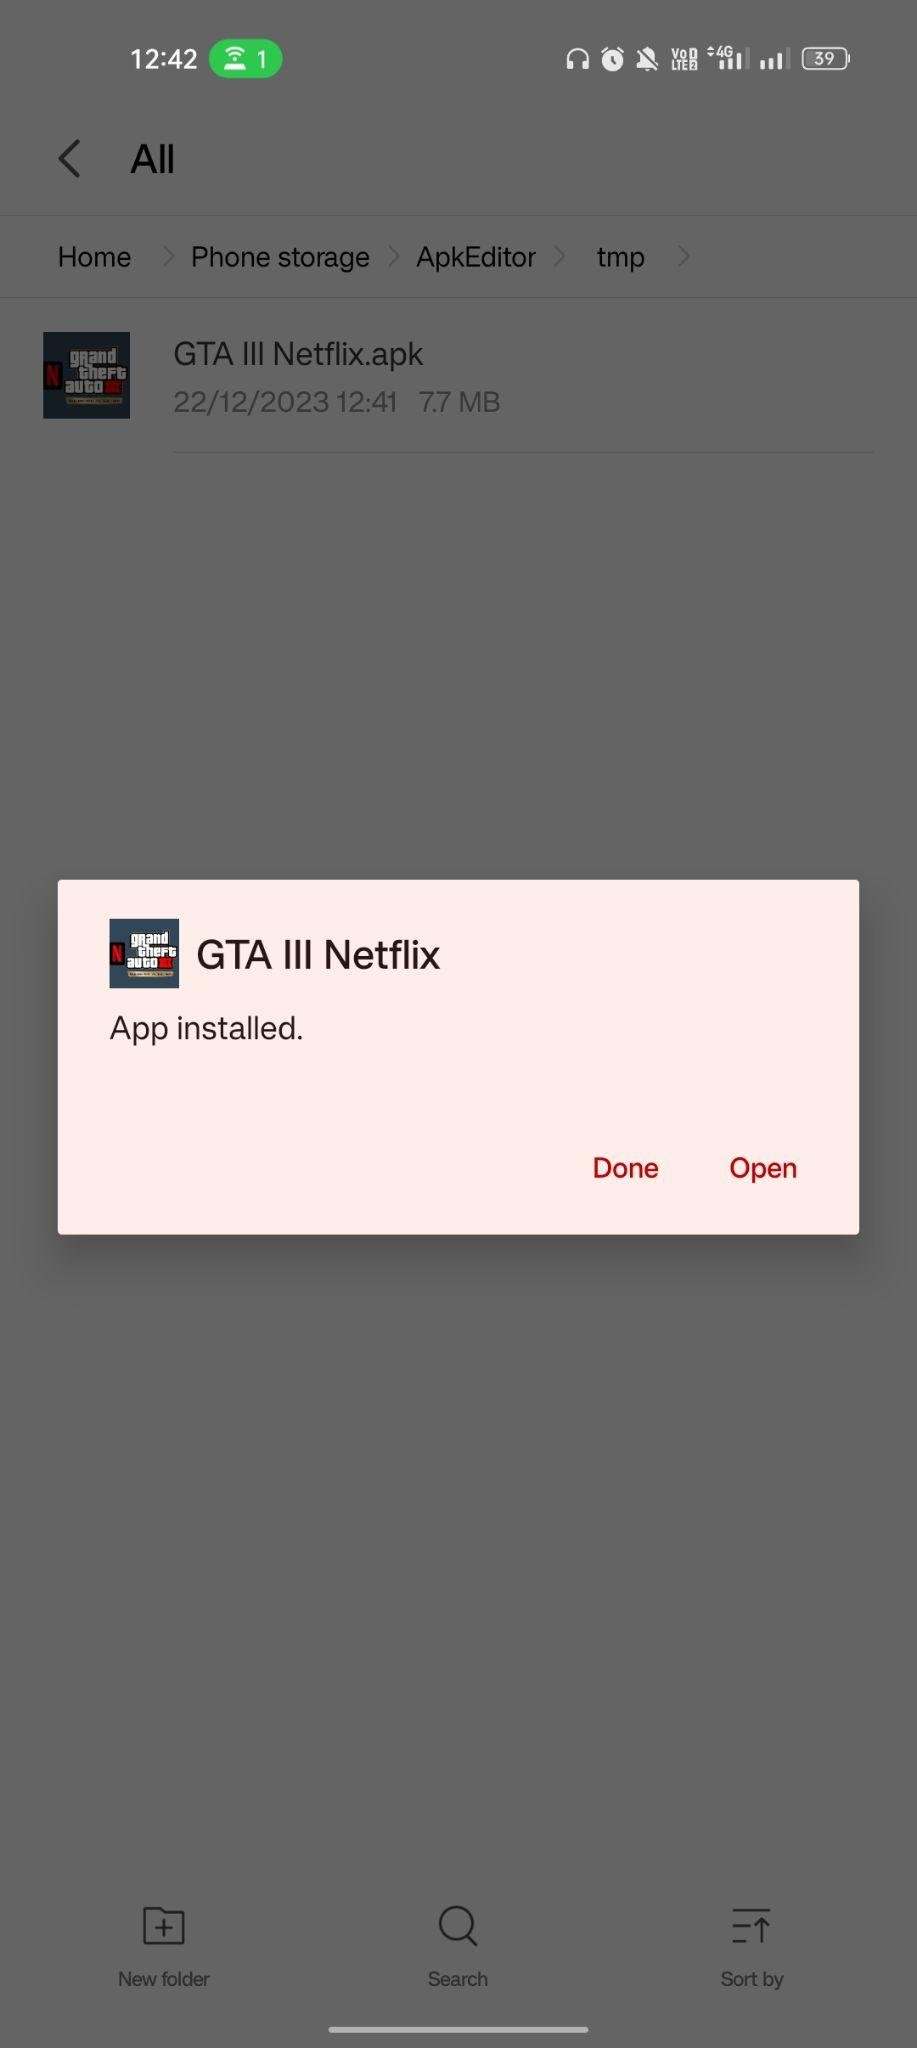 GTA III - Netflix apk installed